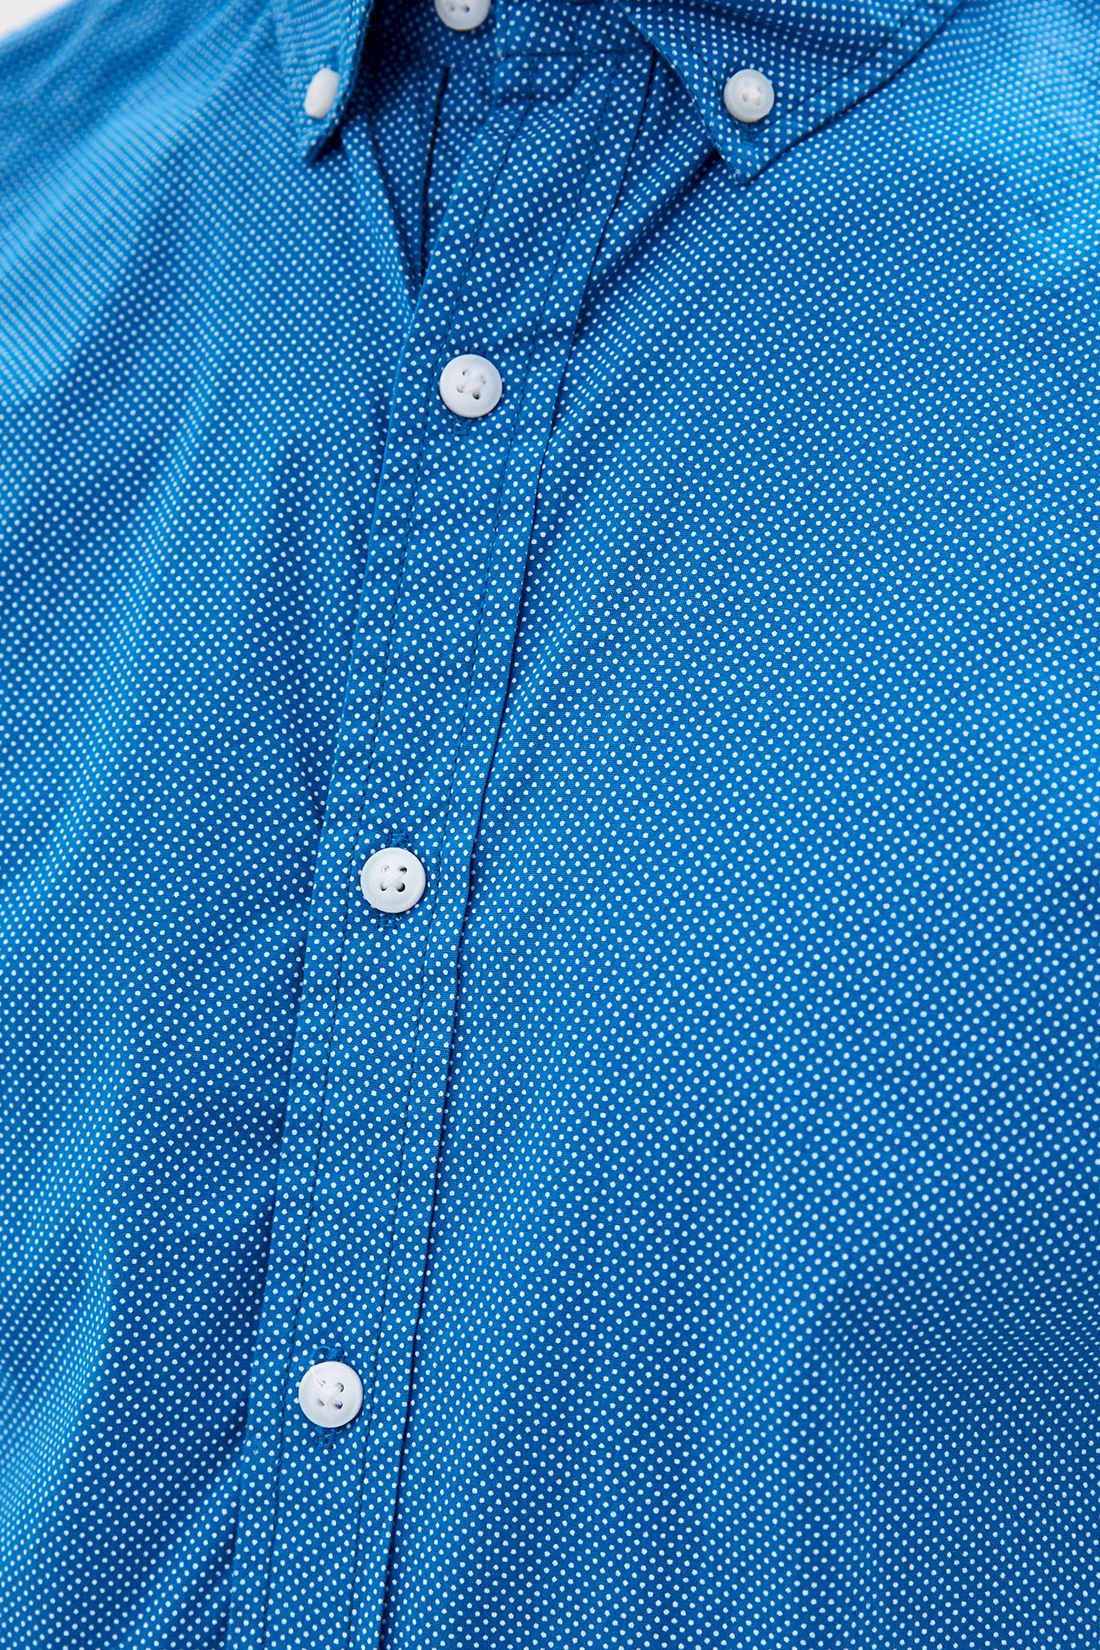 Рубашка в точку с коротким рукавом (арт. baon B680019), размер XL, цвет синий Рубашка в точку с коротким рукавом (арт. baon B680019) - фото 3